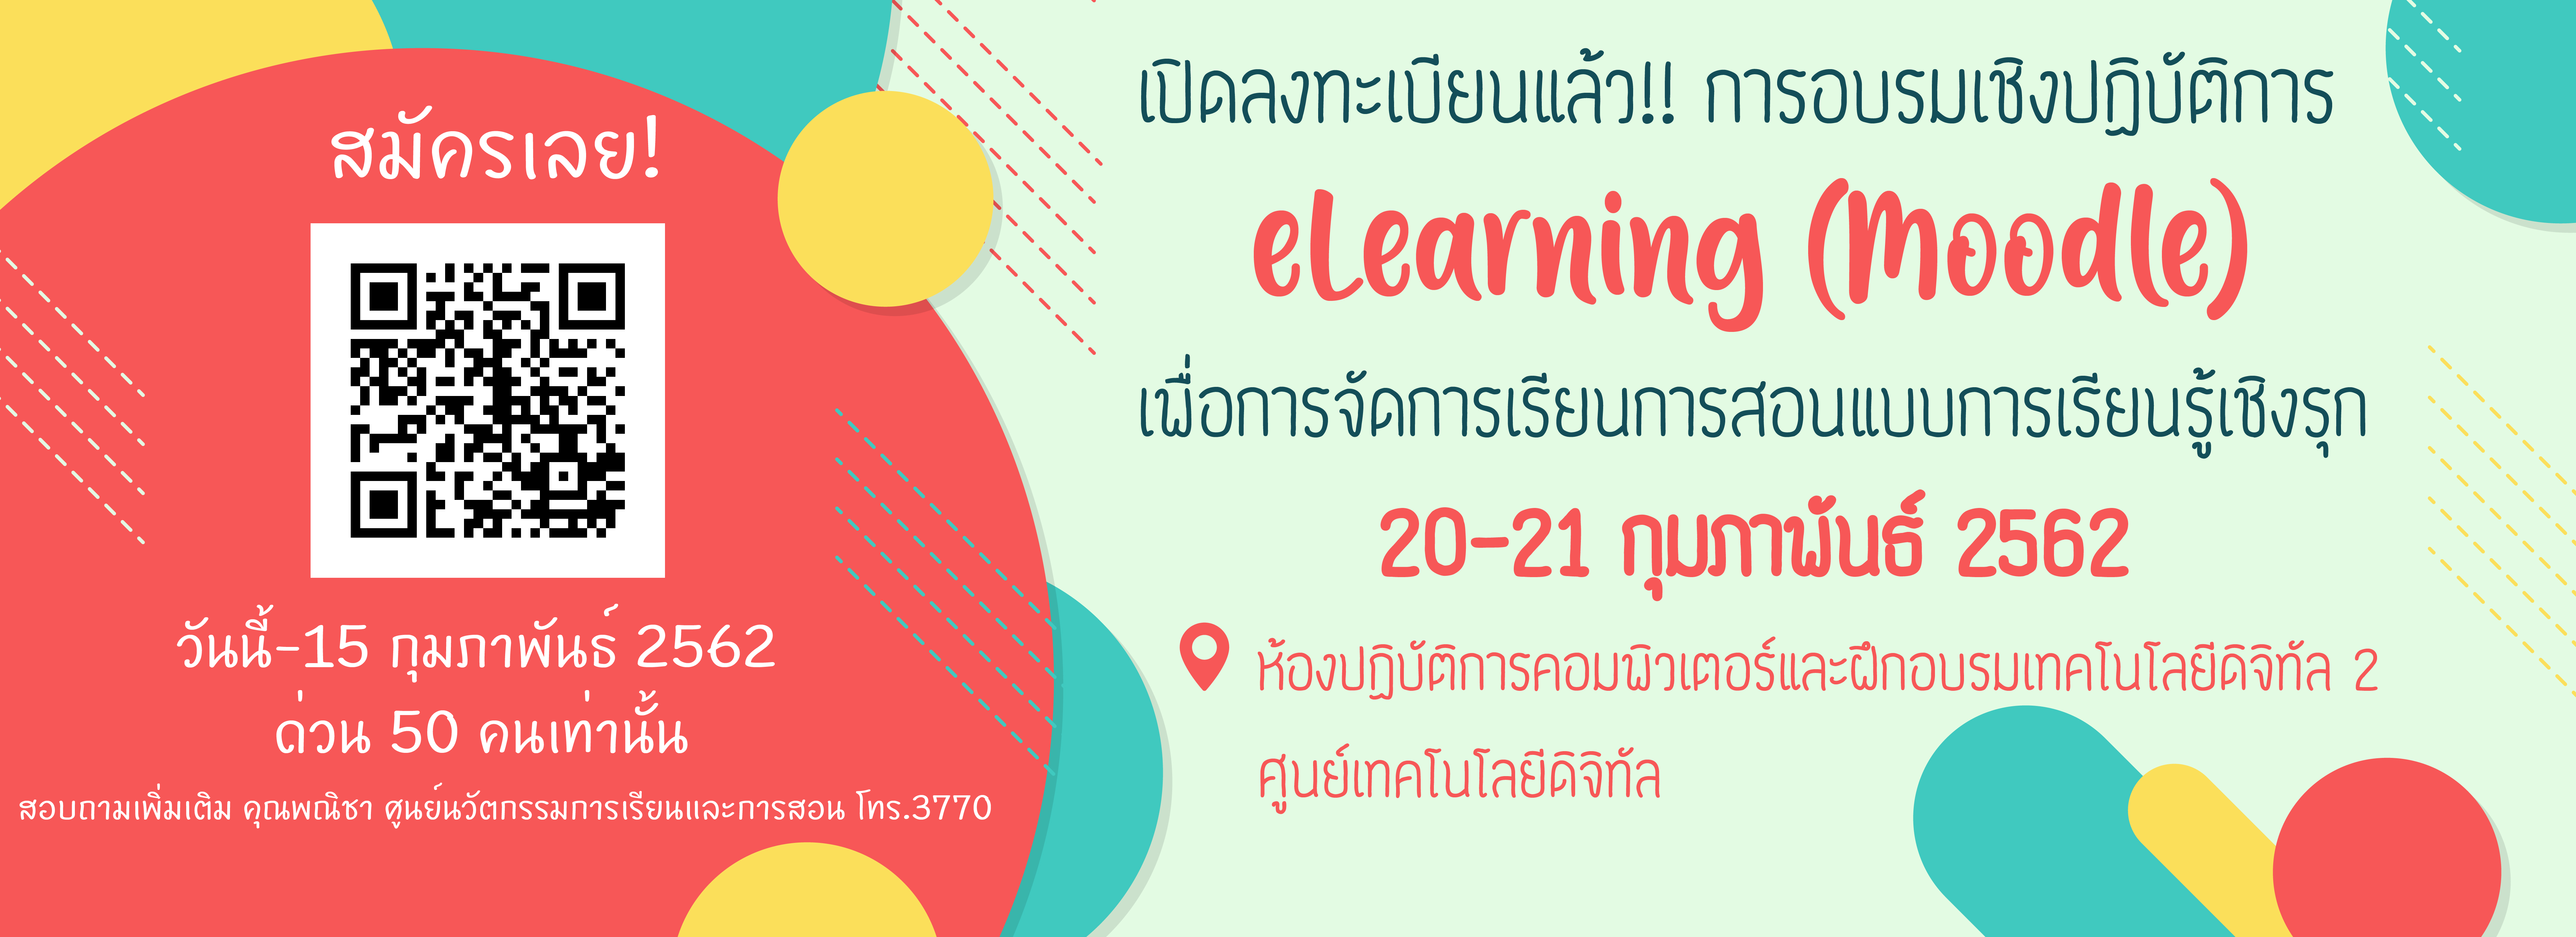 ขอเชิญเข้าร่วมอบรมเชิงปฏิบัติการeLearning (Moodle) เพื่อการจัดการเรียนการสอนแบบการเรียนรู้เชิงรุก วันที่ 20-21 ก.พ. 2562